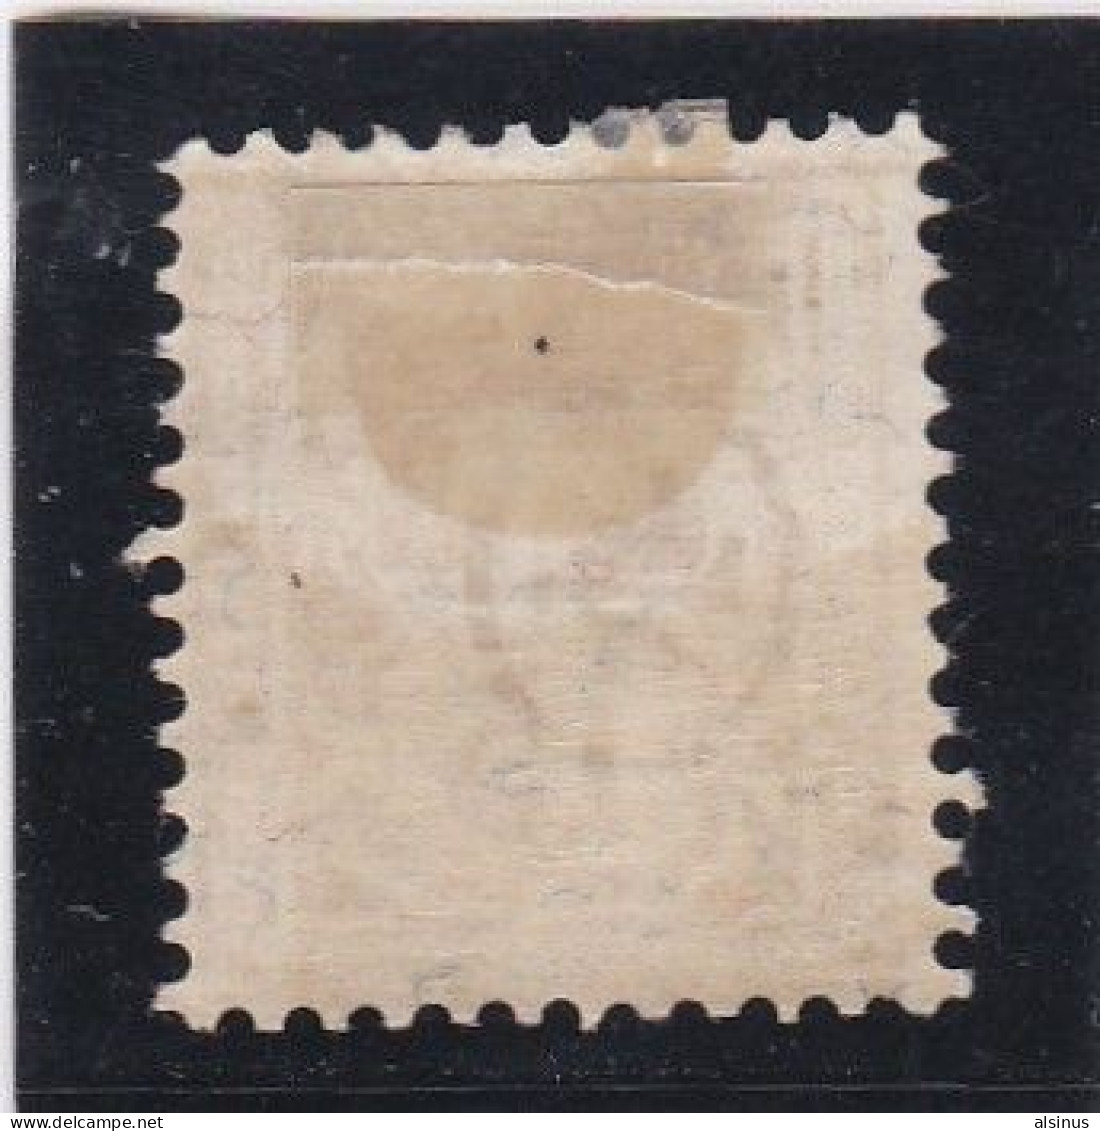 SUISSE - 1882 - CROIX FEDERALE - N° 62 - 15 C JAUNE - NEUF CHARNIERE - Unused Stamps